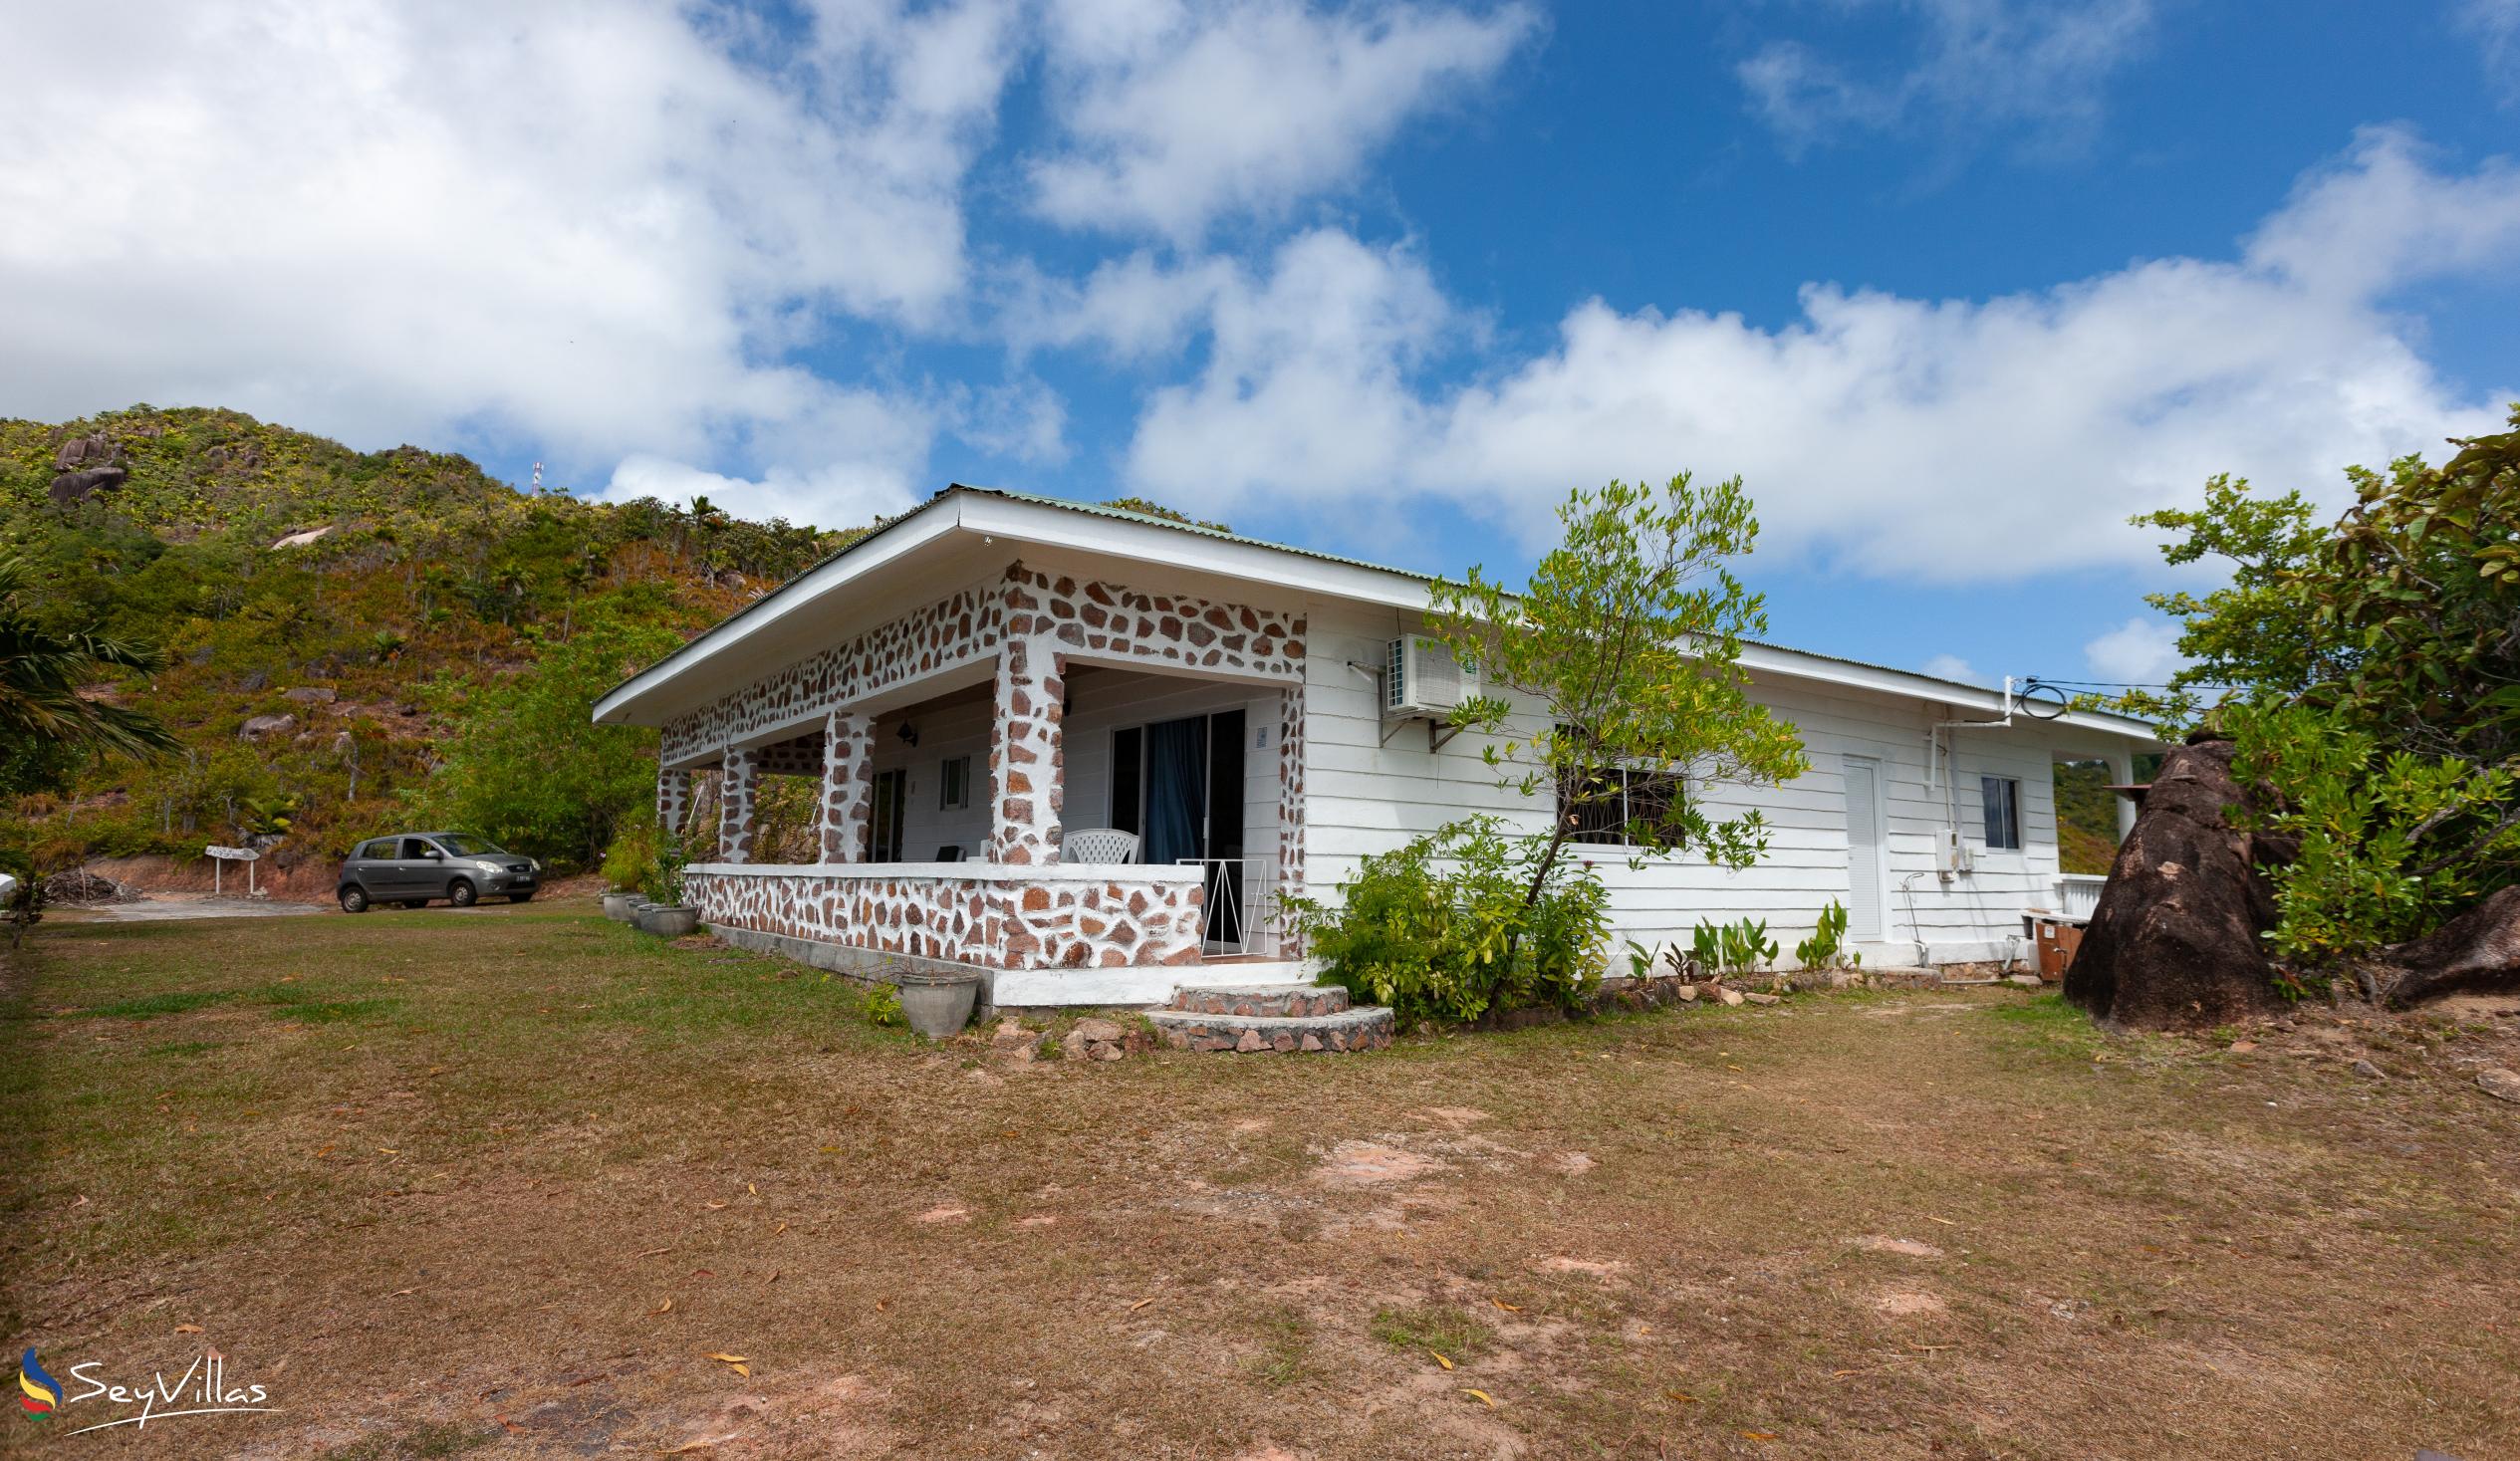 Foto 13: Maison du Soleil - Aussenbereich - Praslin (Seychellen)